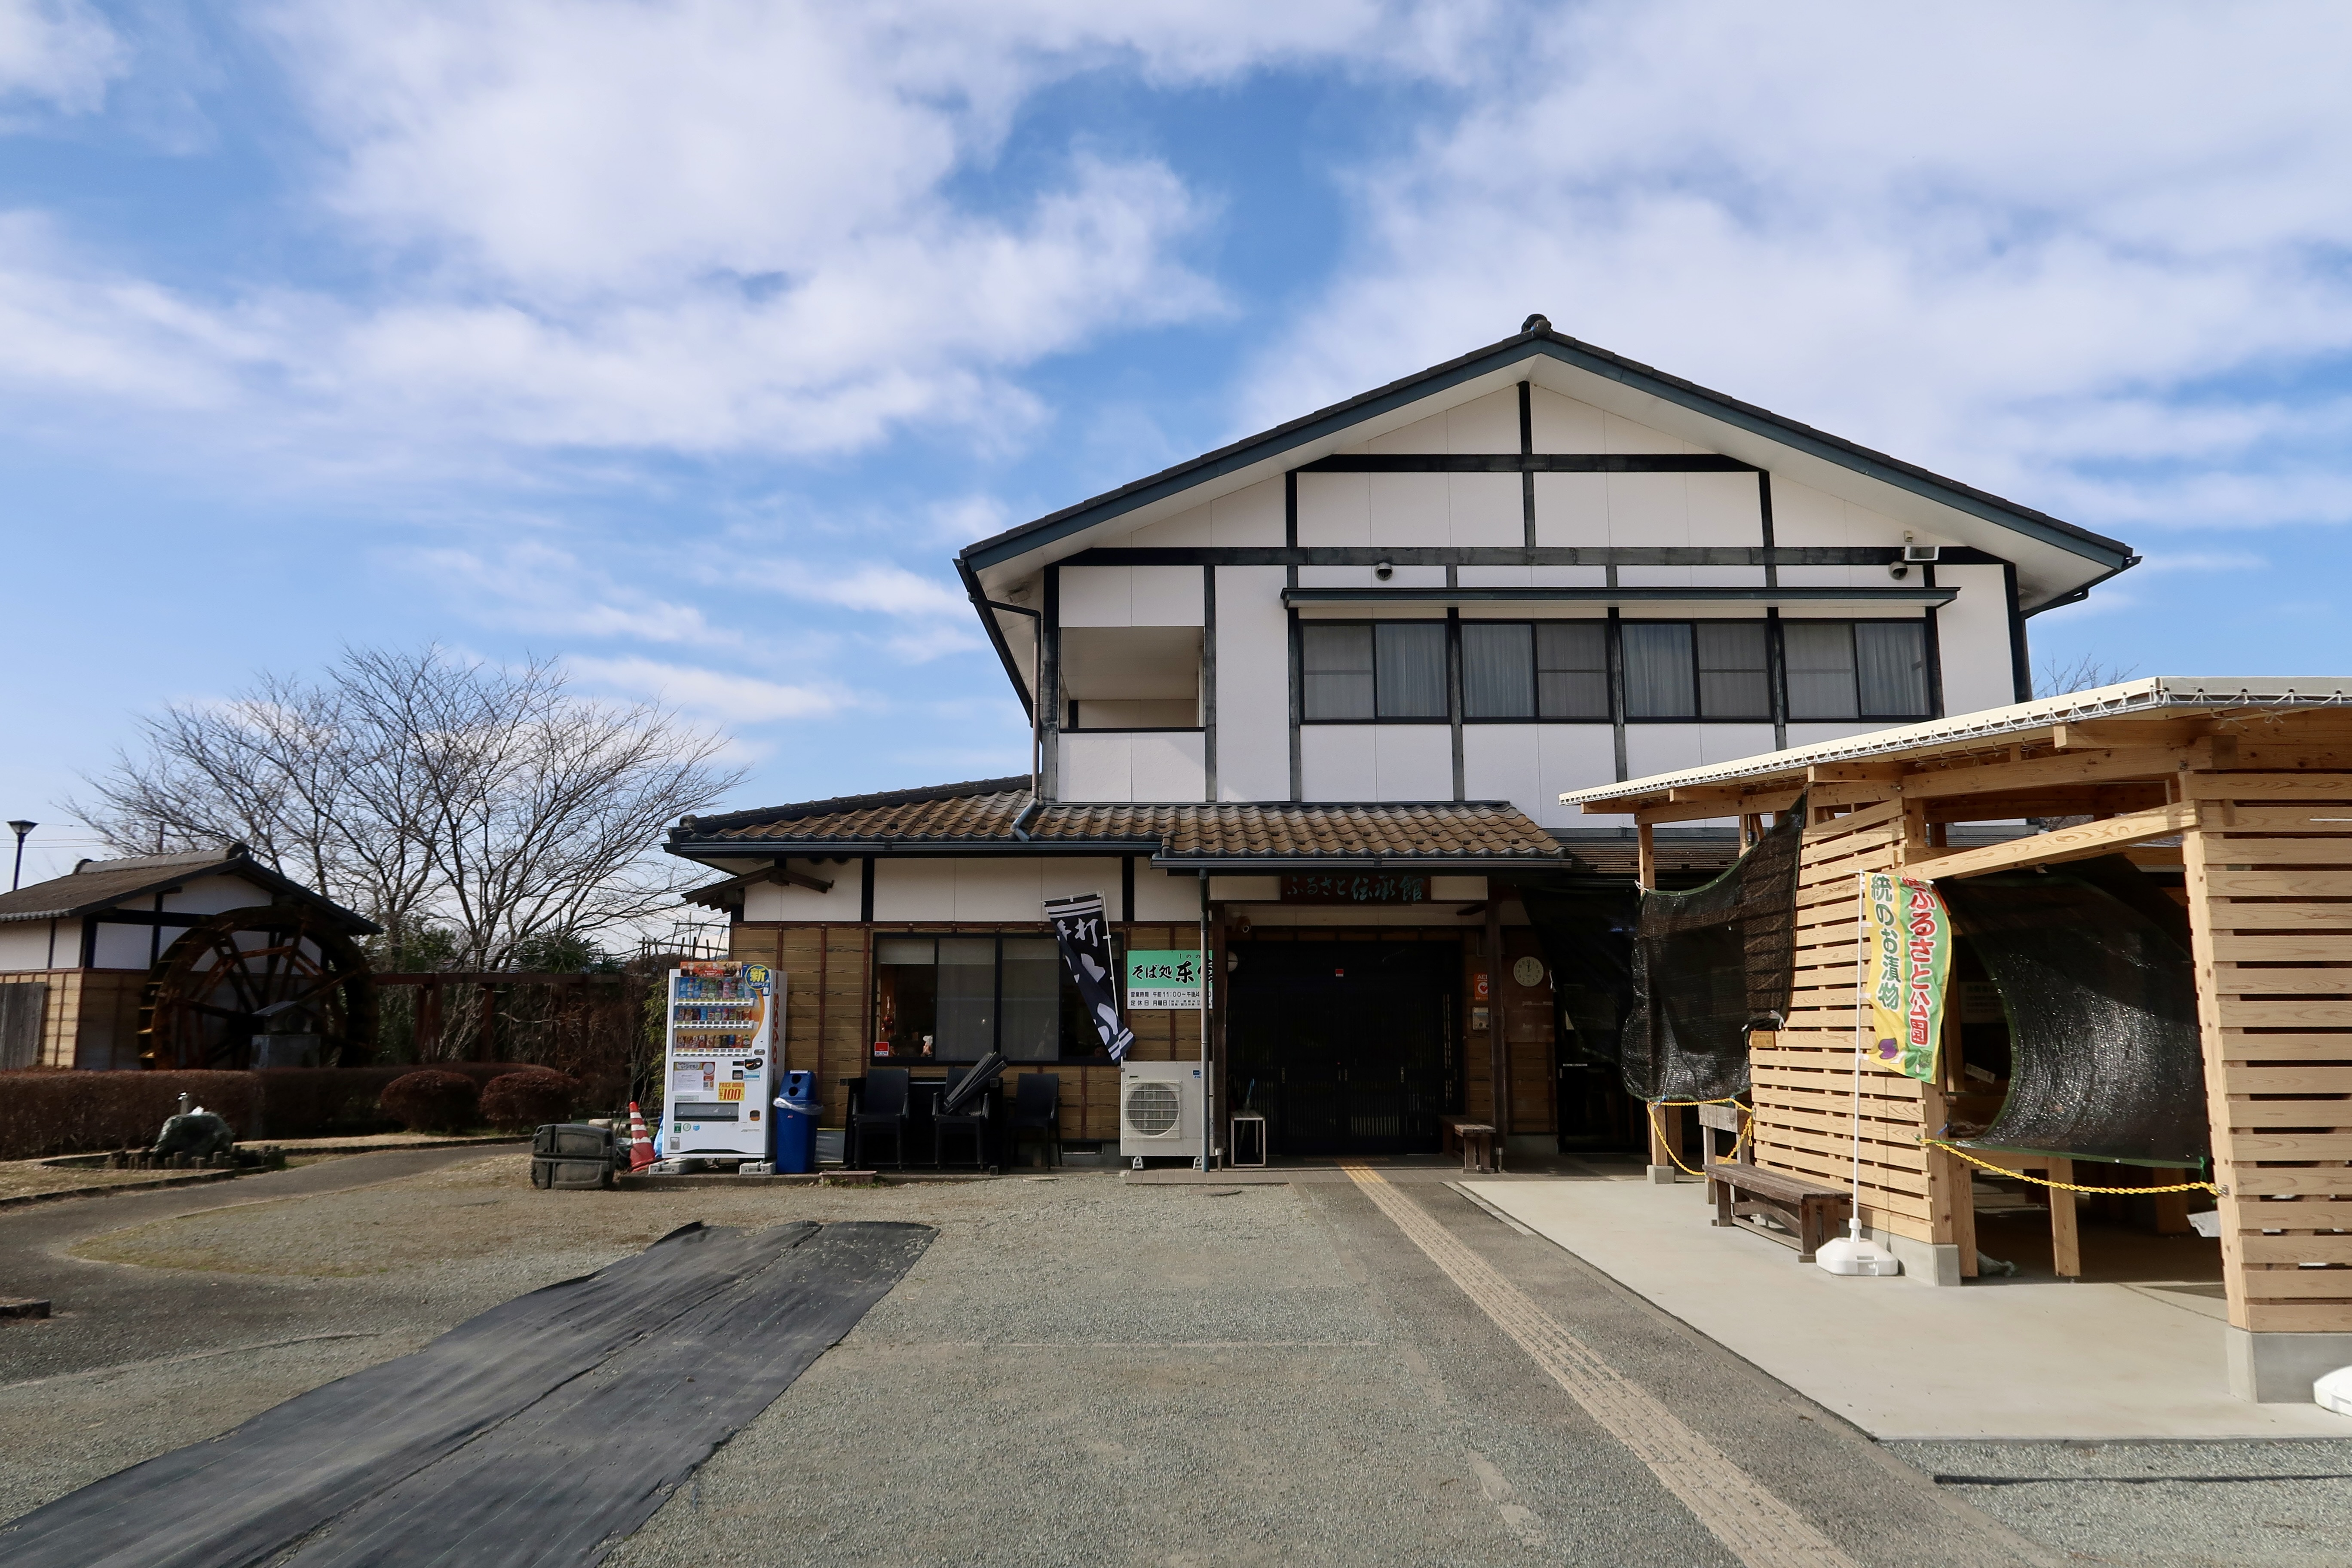 Main facility at Tahara Furusato Park